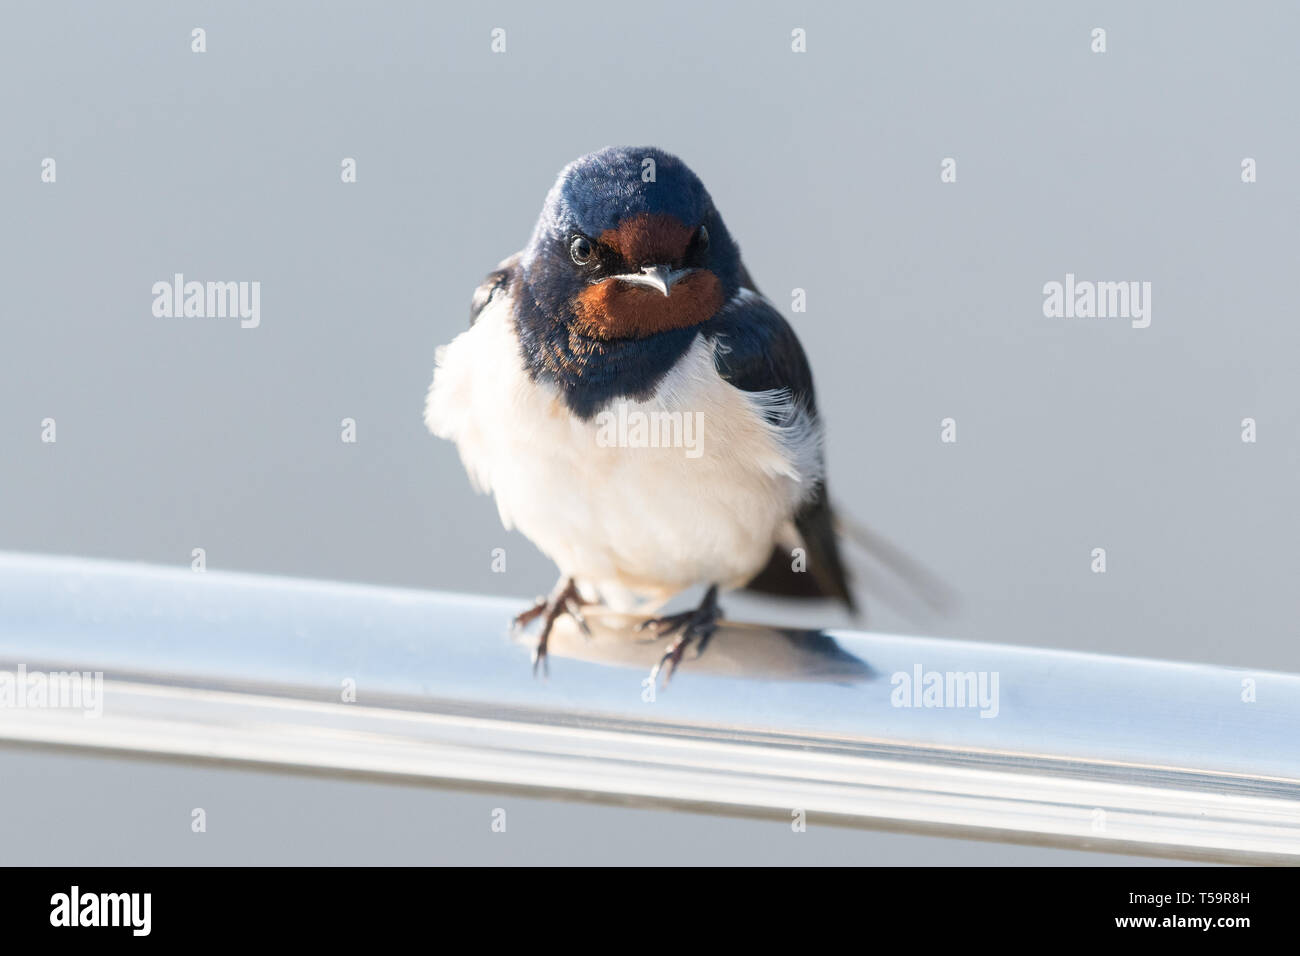 Hirundo rustica - Swallow - oiseau perché sur un bateau, Luss, Loch Lomond, Écosse, Royaume-Uni Banque D'Images